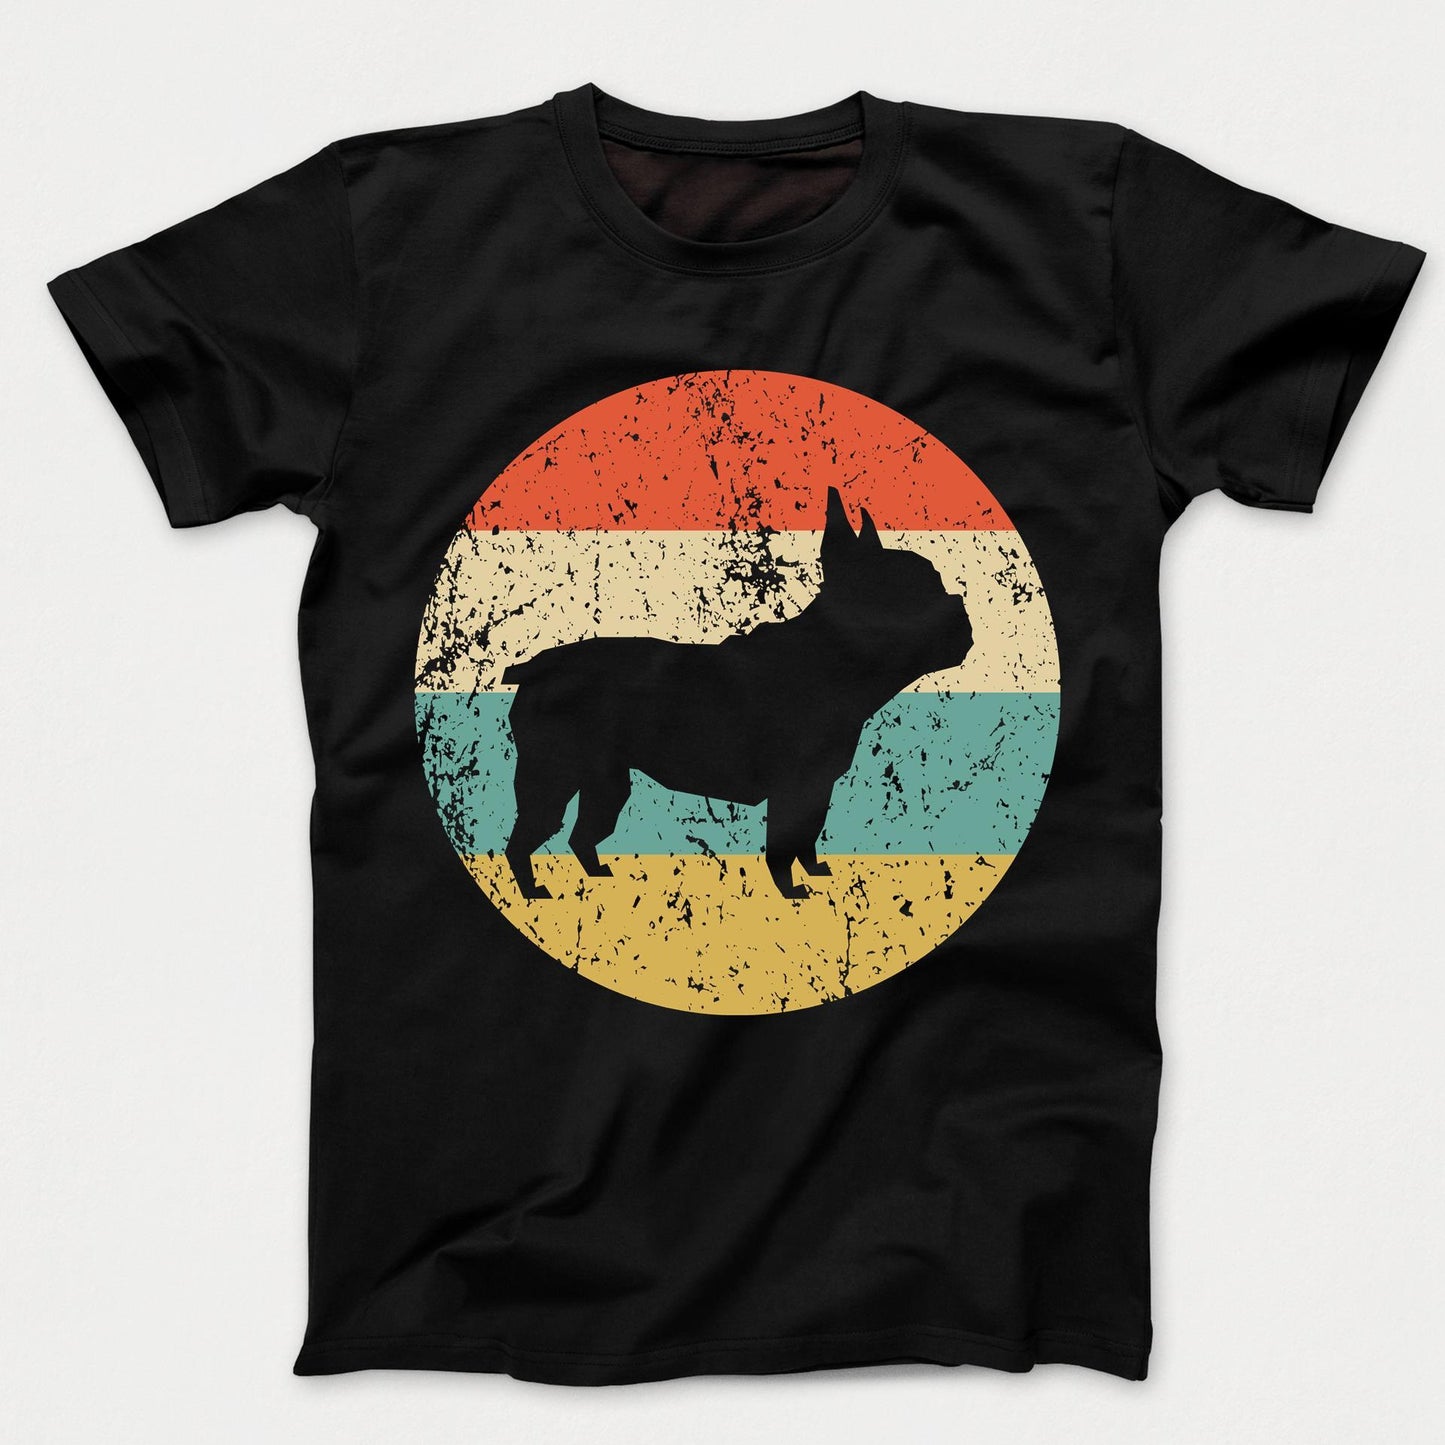 French Bulldog Shirt - Retro French Bulldog Dog Kids T-Shirt